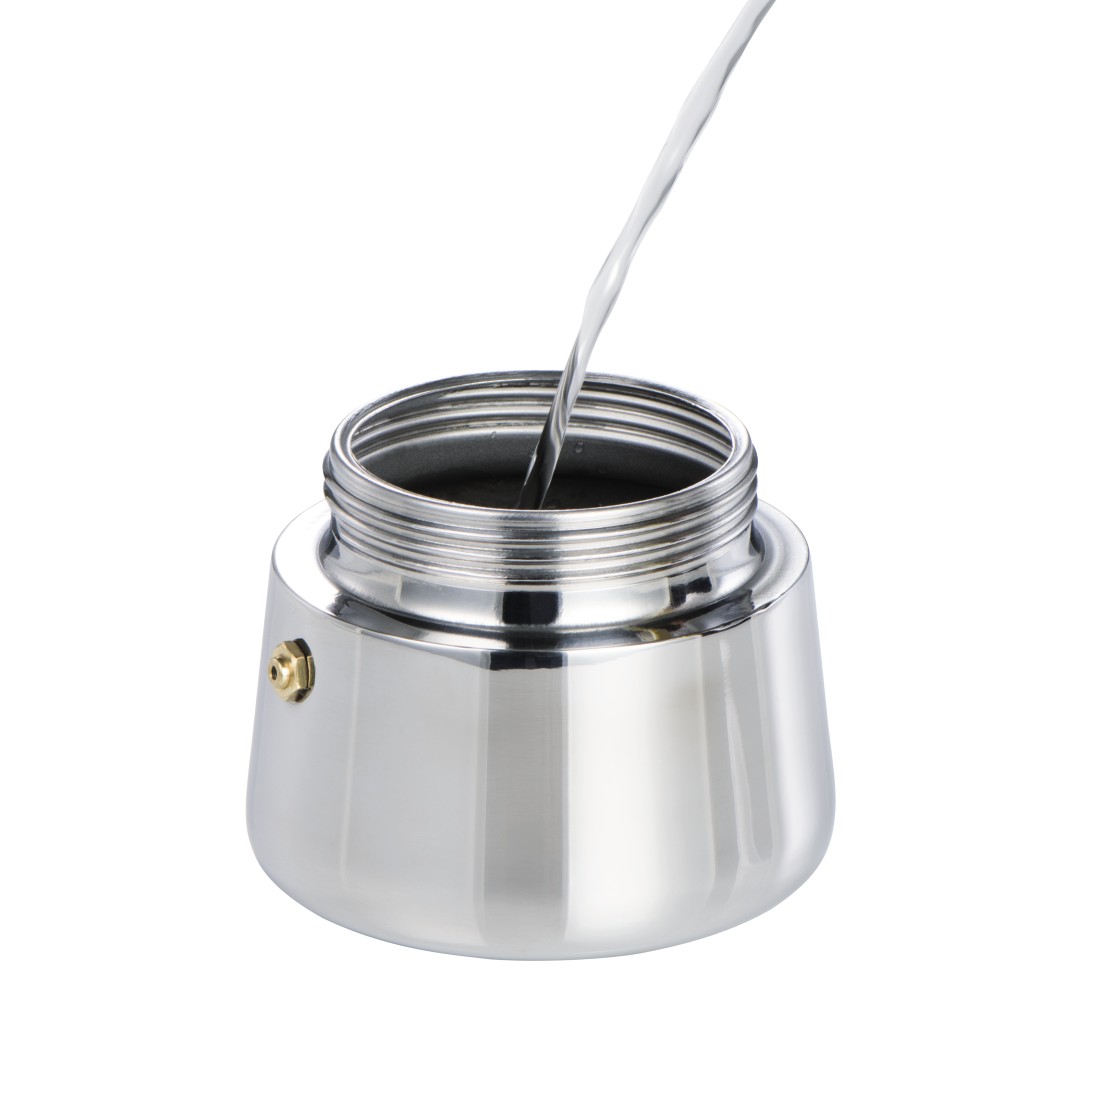 dex5 Druckfähiges Detail 5 - Xavax, Espressokocher aus Edelstahl, 250 ml, geeignet für Induktion